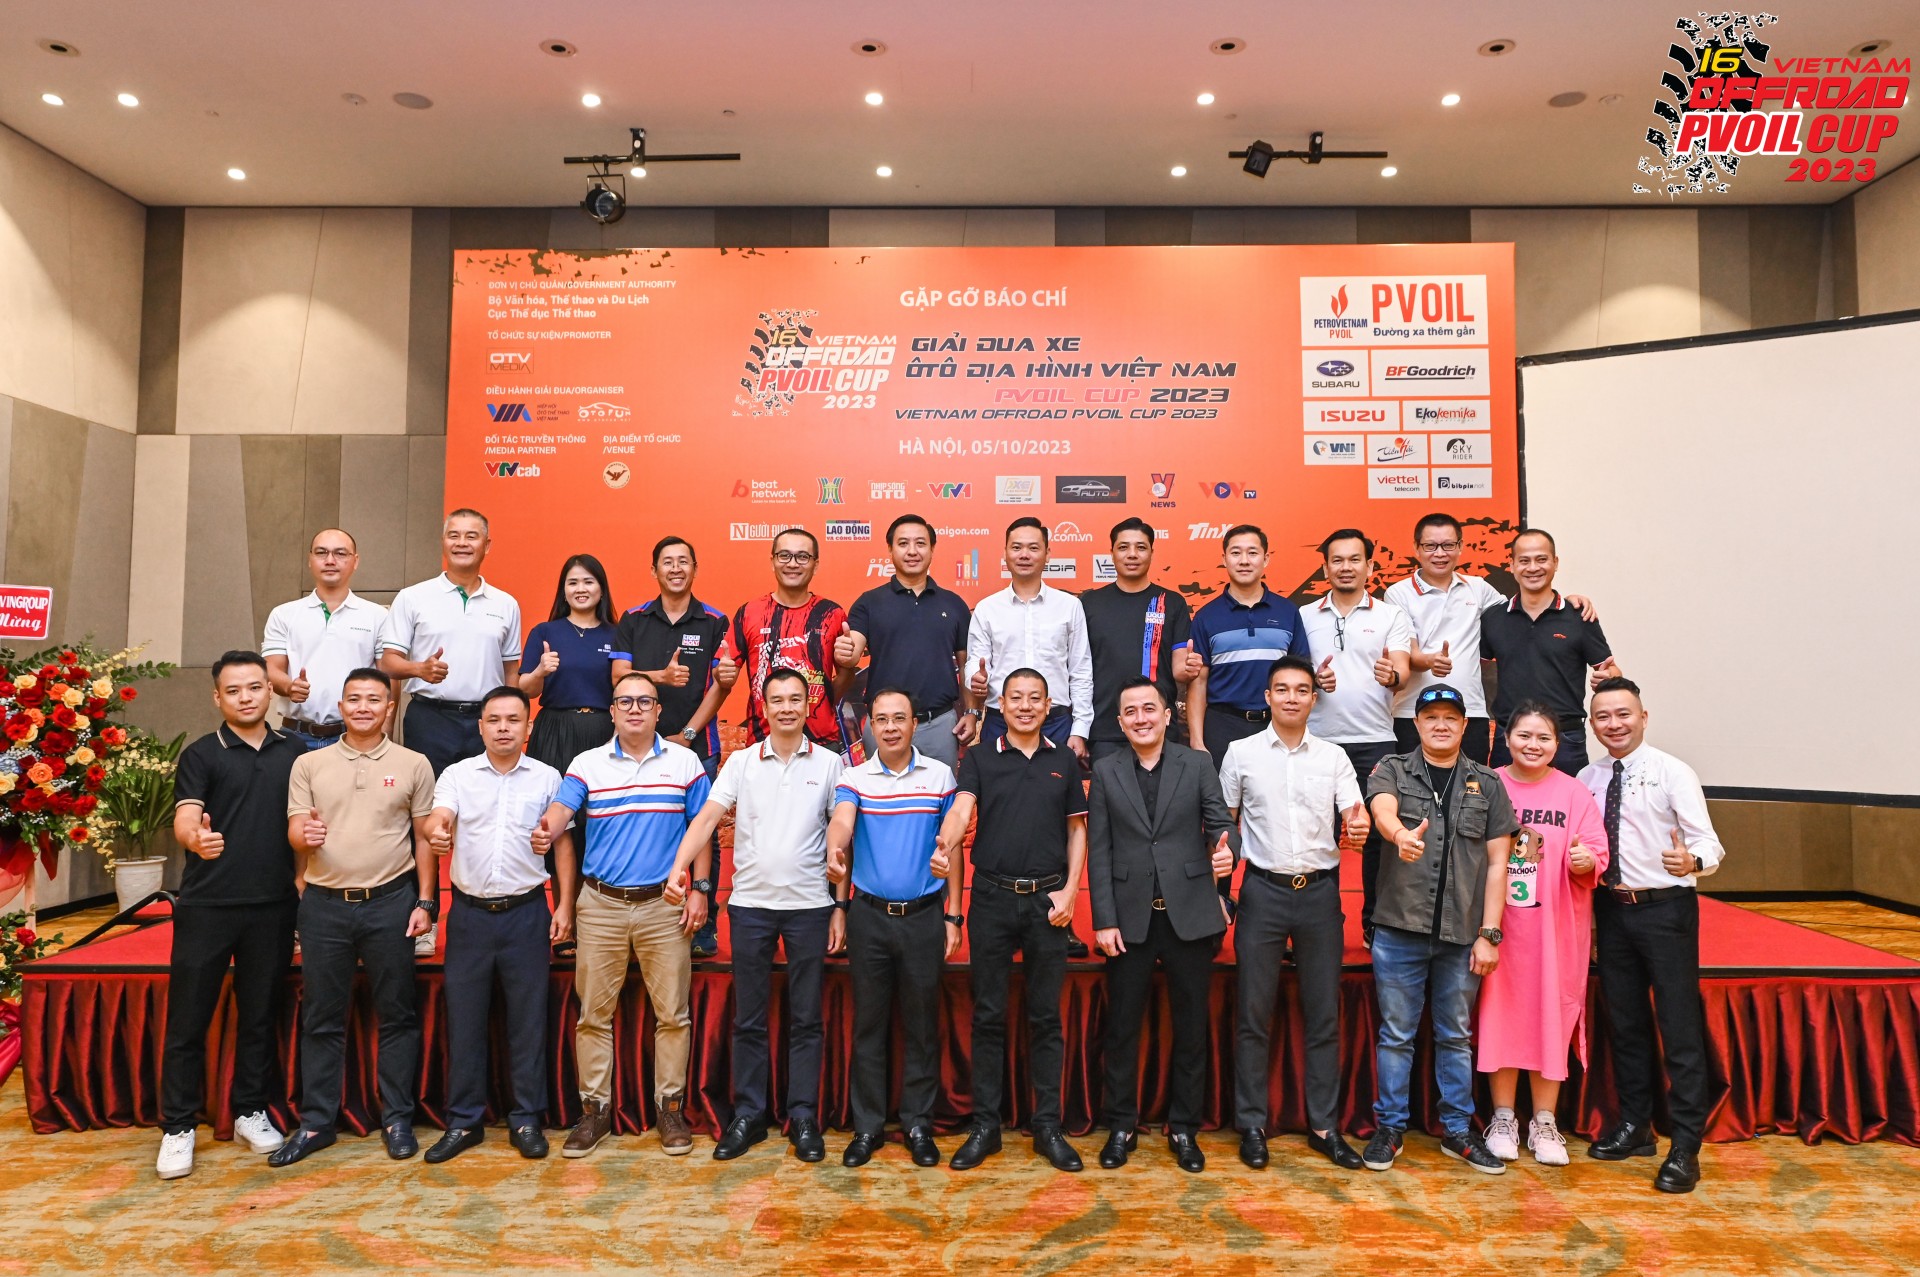 PVOIL VOC 2023 [4] Giải đua xe ô tô địa hình Việt Nam PVOIL Cup 2023 sẽ diễn ra vào ngày 27-29/10